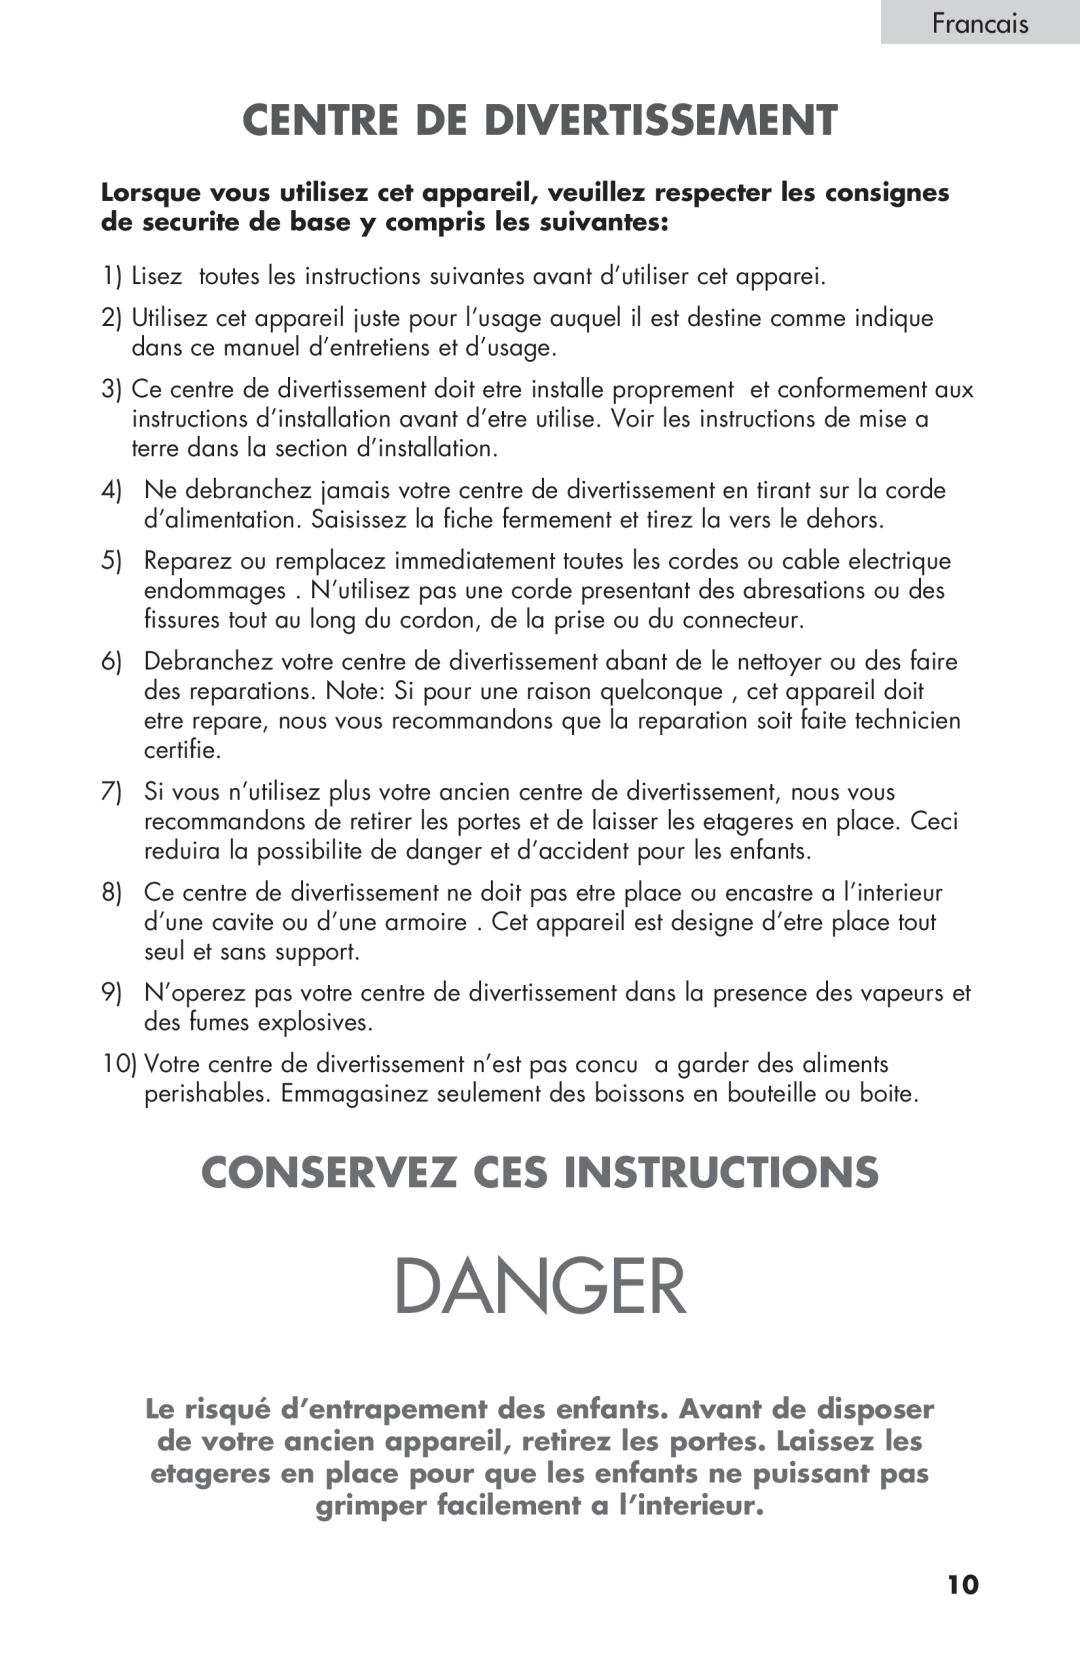 Haier HBCN05FVS user manual Centre De Divertissement, Conservez Ces Instructions, Francais, Danger 